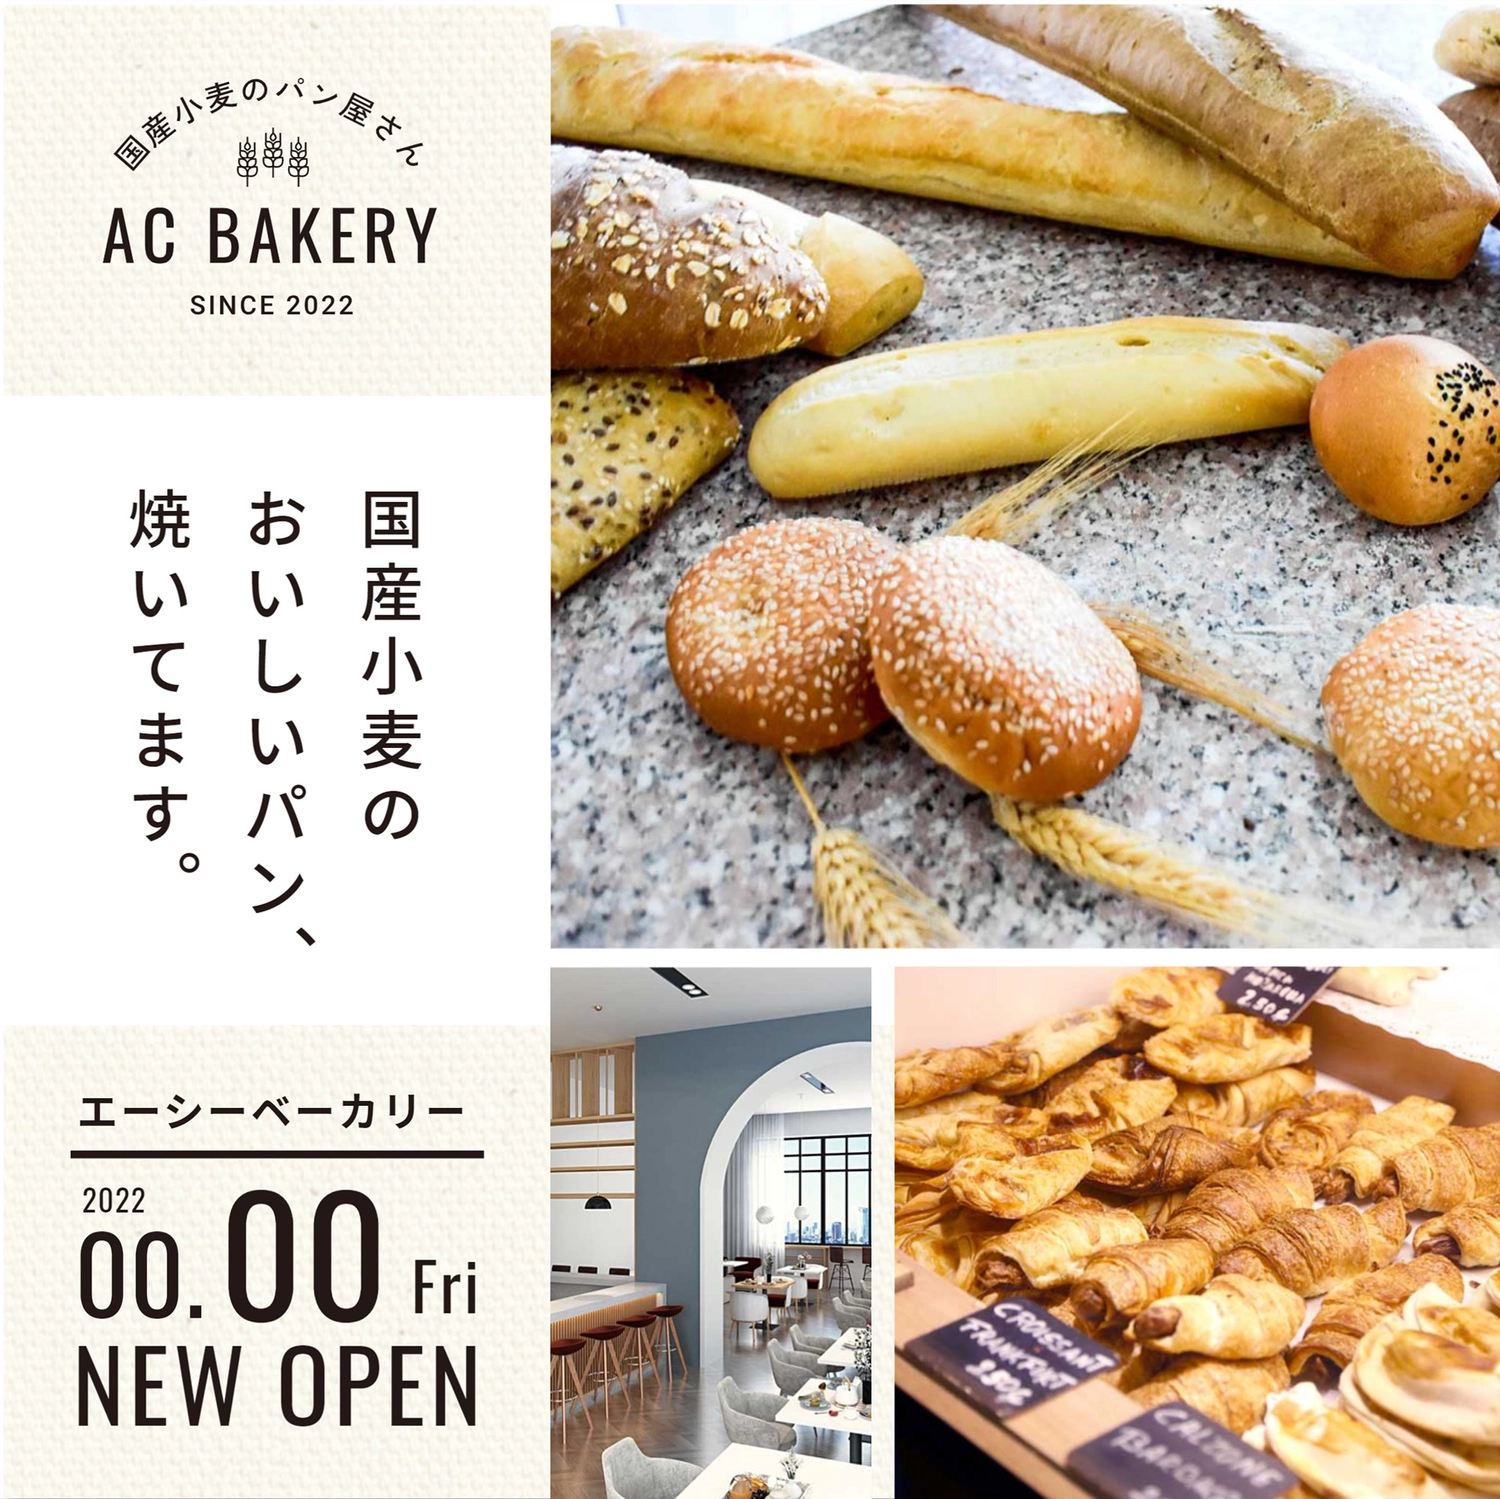 国産小麦ベーカリー　新規開店の案内, 素敵, 食べ物, 焼きたて, Instagram広告テンプレート